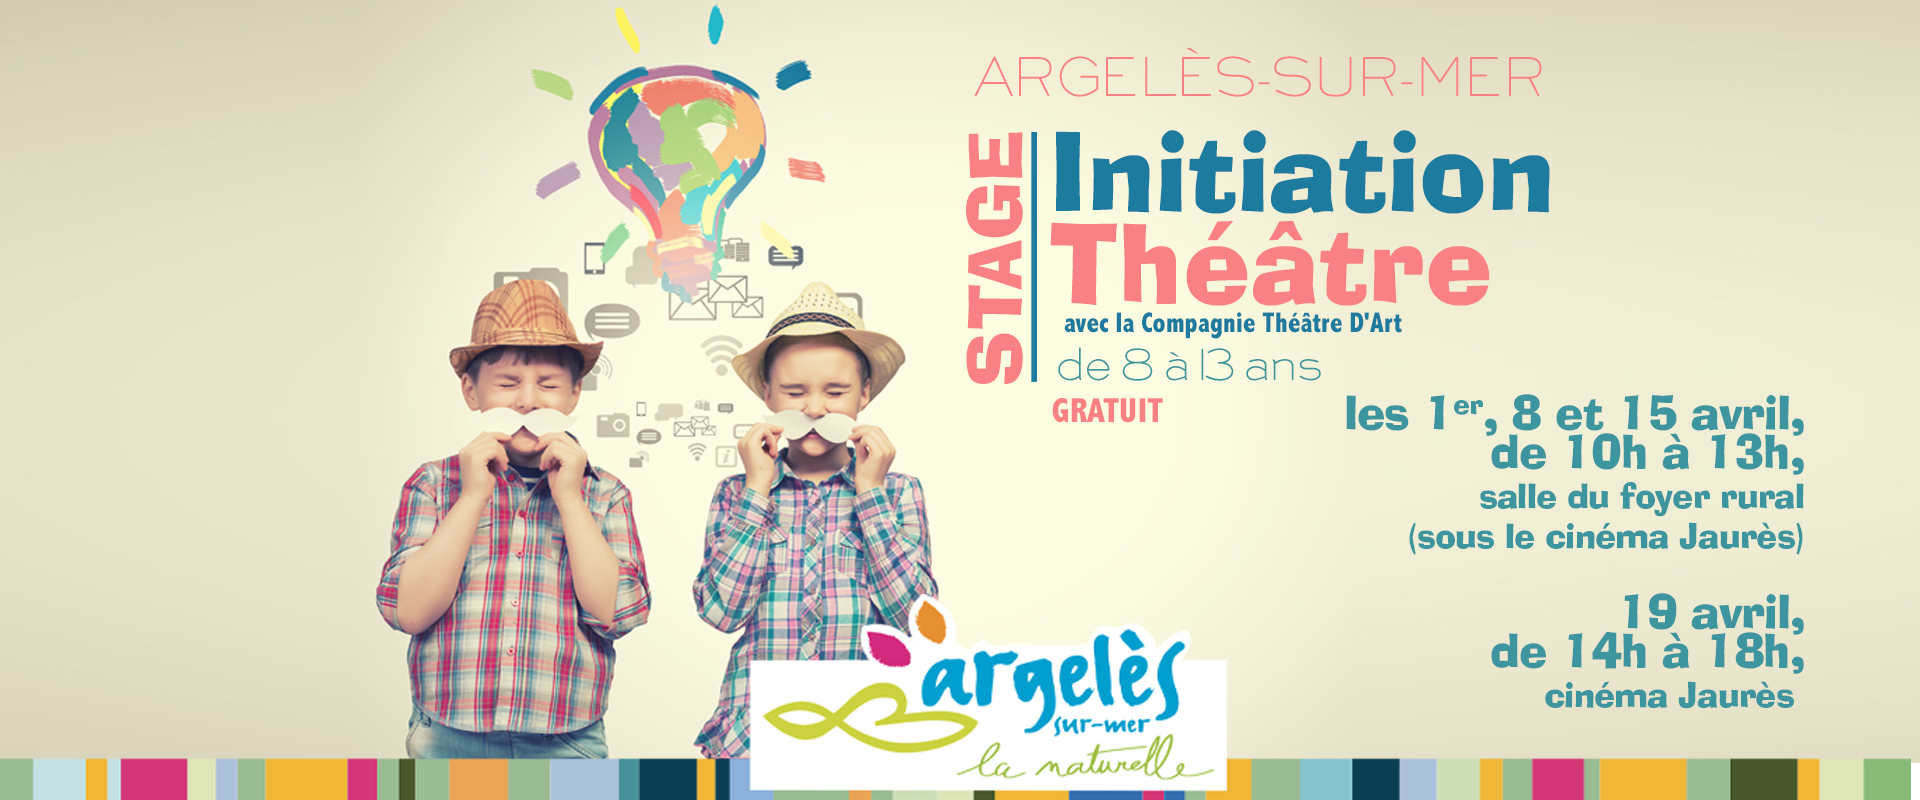 initiation théâtre pour les jeunes de 8 à 13 ans à Argelès-sur-Mer